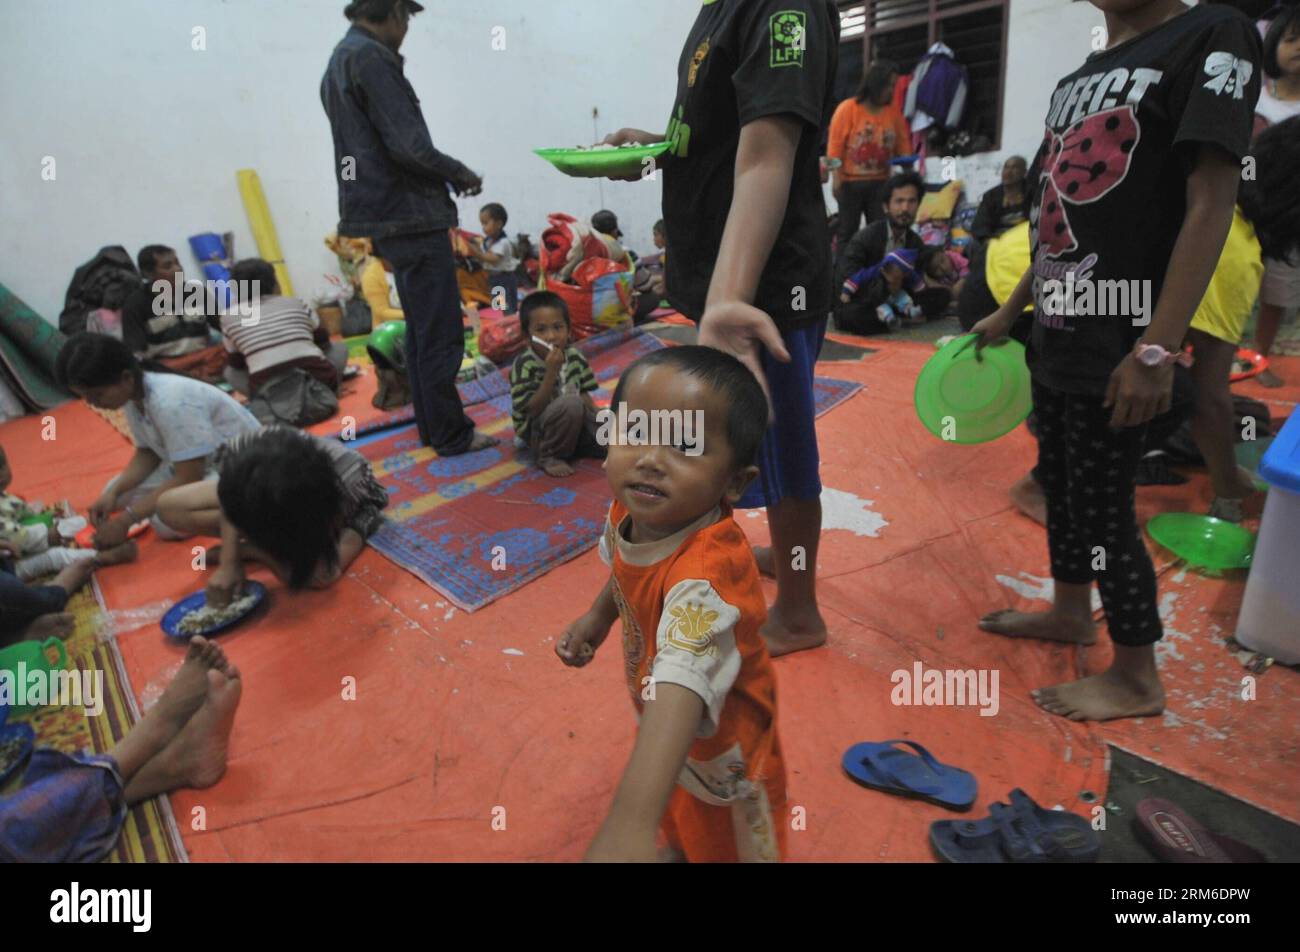 (140106) -- SUMATRA SETTENTRIONALE, 6 gennaio 2014 (Xinhua) -- i rifugiati del vulcano Sinabung si rifugiano a Sumatra settentrionale, Indonesia, 6 gennaio 2014. Oltre 21.800 persone hanno cercato rifugio in 33 rifugi nel distretto di Karo nella provincia di Sumatra settentrionale, mentre il vulcano Sinabung ha continuato a spargere cenere e lava lunedì, ha detto un funzionario indonesiano. (Xinhua/Agung Kuncahya B.) INDONESIA-SUMATRA SETTENTRIONALE-SINABUNG-REFUGEES PUBLICATIONxNOTxINxCHN Sumatra settentrionale 6 gennaio 2014 i rifugiati del vulcano XINHUA Sinabung prendono rifugio A Sumatra settentrionale Indonesia 6 gennaio 2014 oltre 21 800 celebrità hanno cercato rifugio A 33 nel Diamond District di North Sum Foto Stock